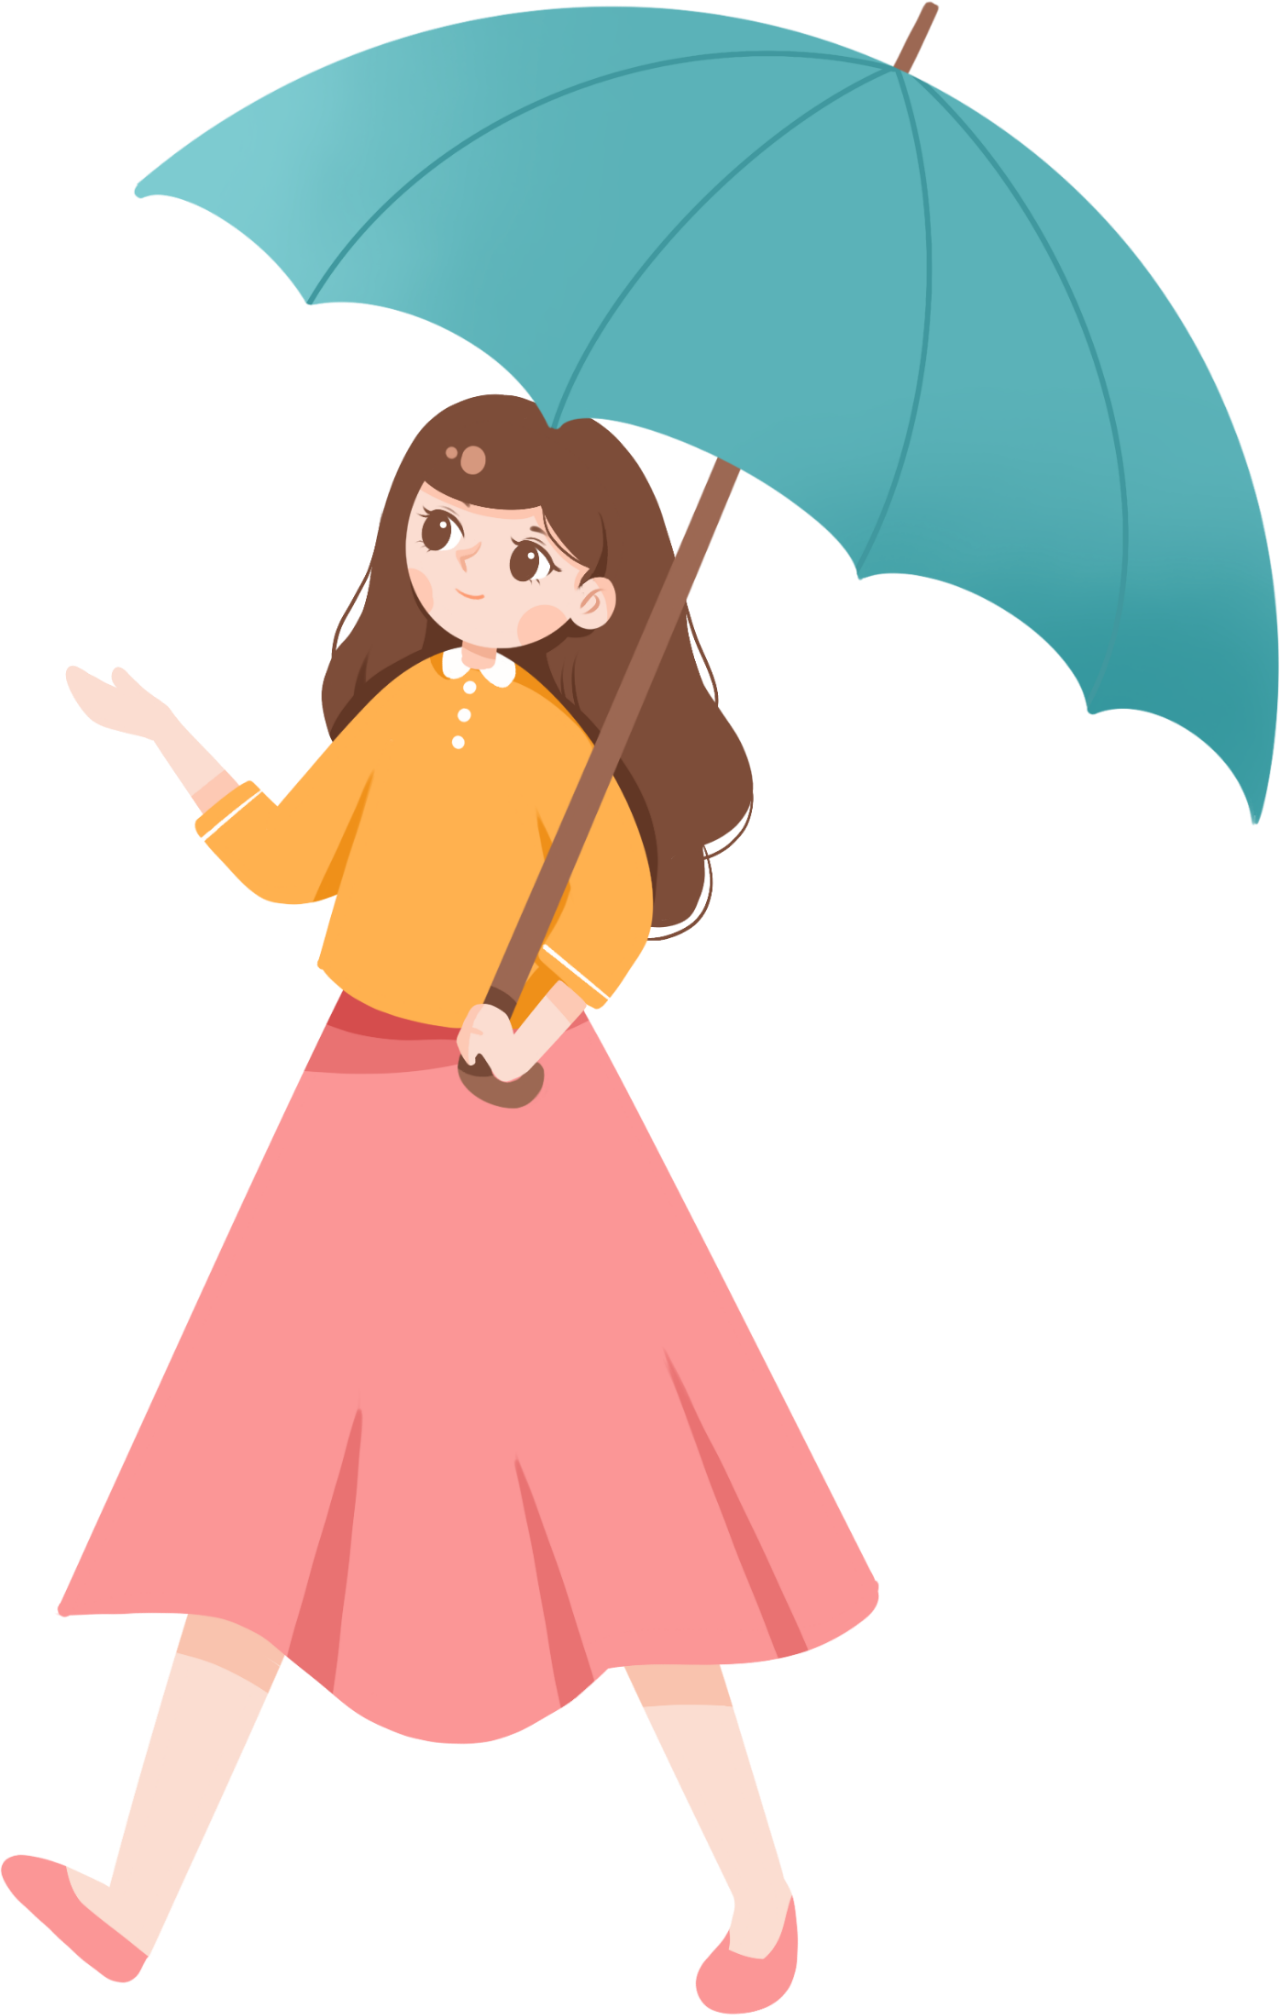 可爱猫耳朵儿童雨伞 学生雨伞 遮阳可爱卡通儿童雨伞批发颜色随机-阿里巴巴